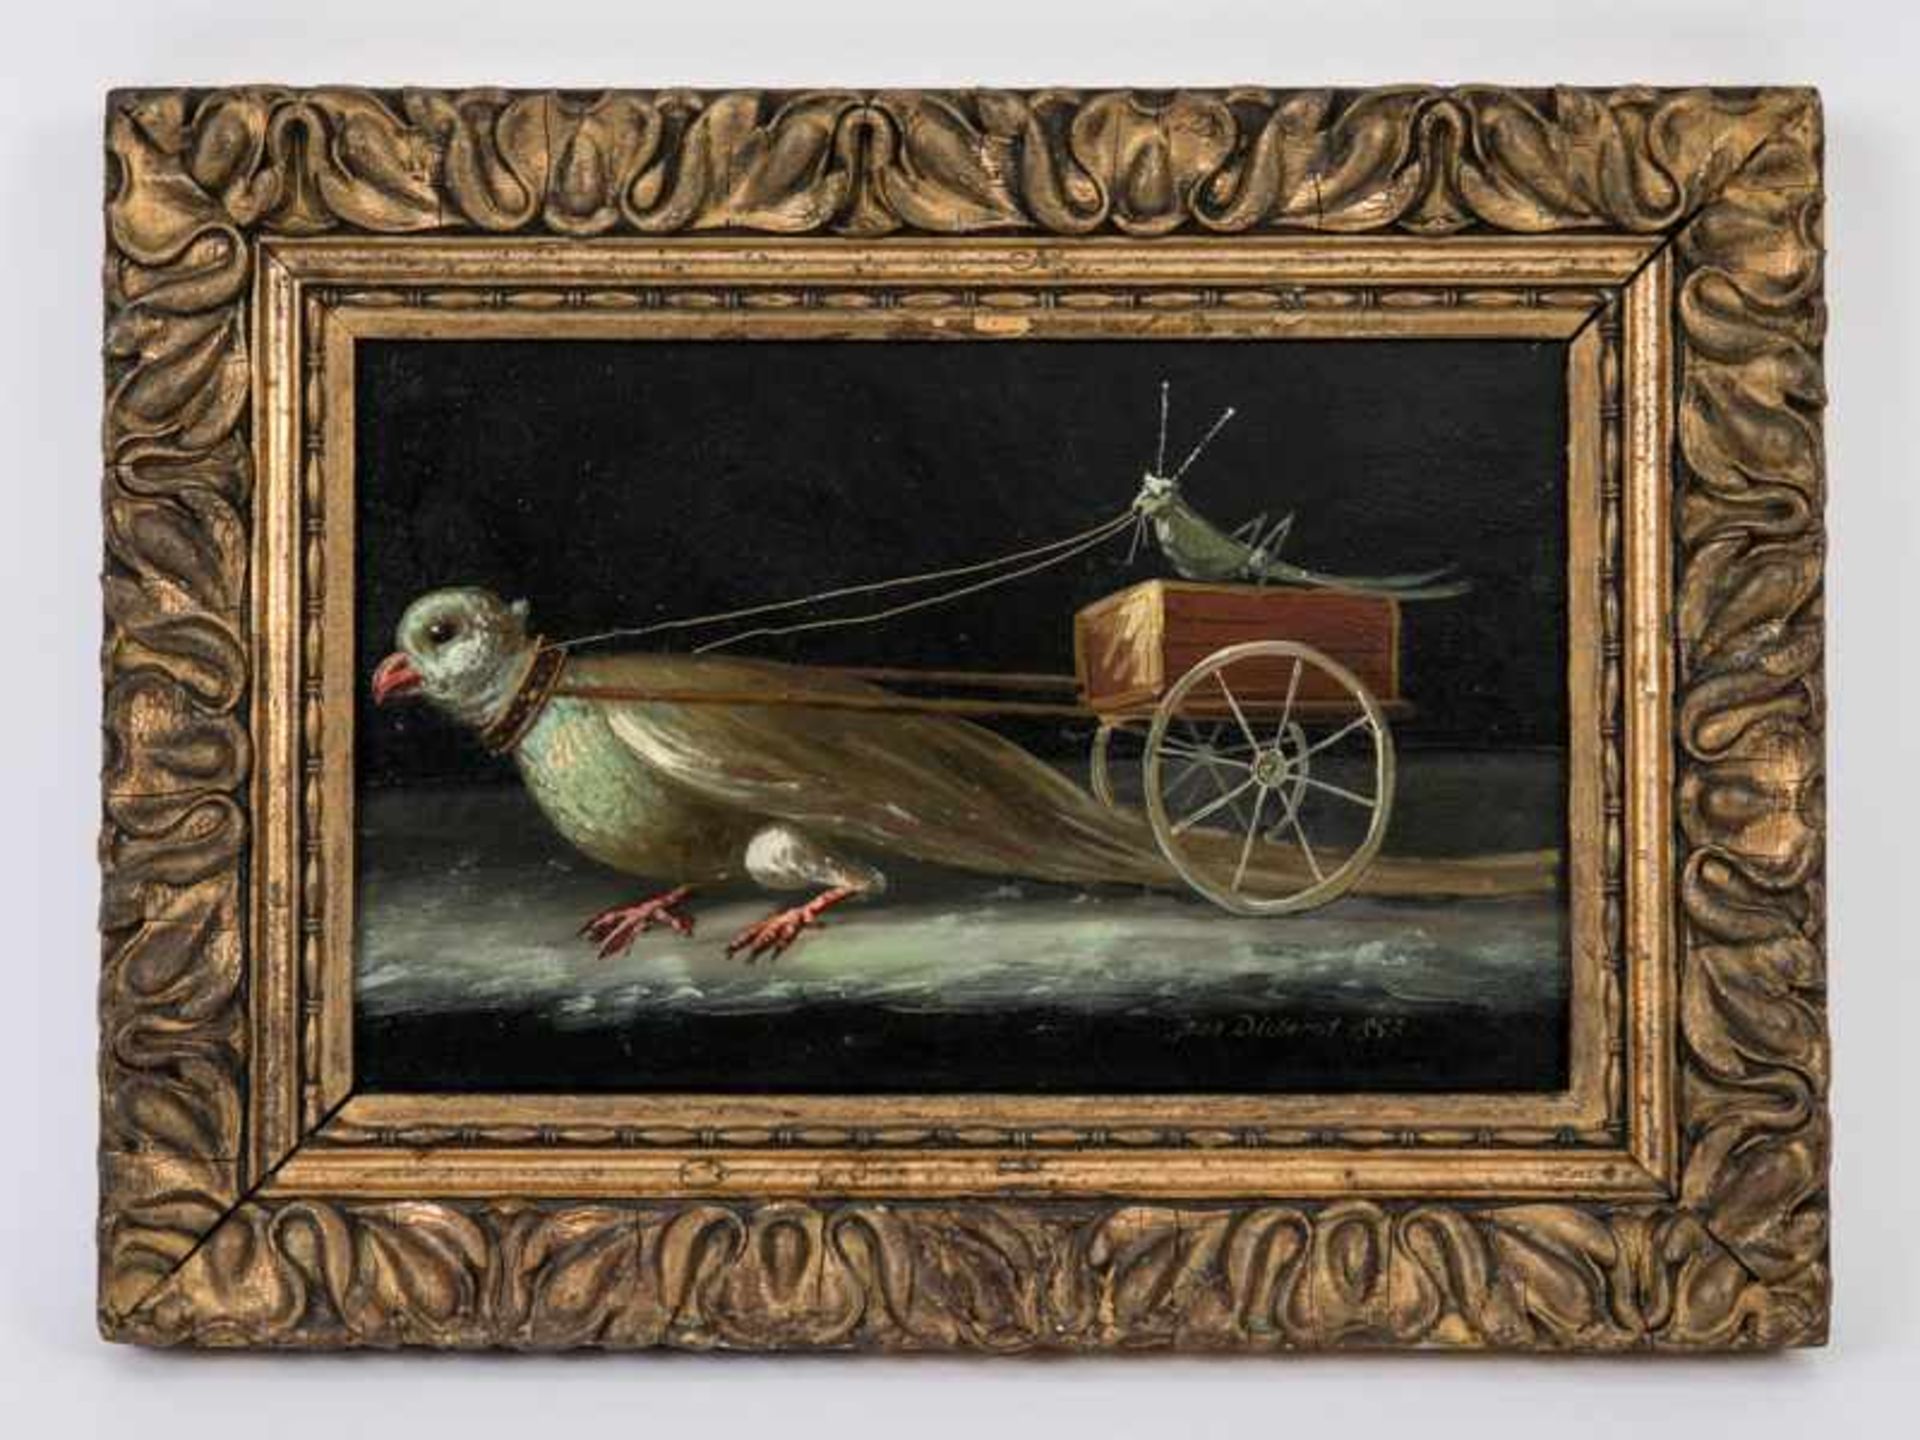 Französischer Maler des 19. Jh., bez. "Jean Diderot". Öl auf Karton; "Gespann mit Heuschrecke als